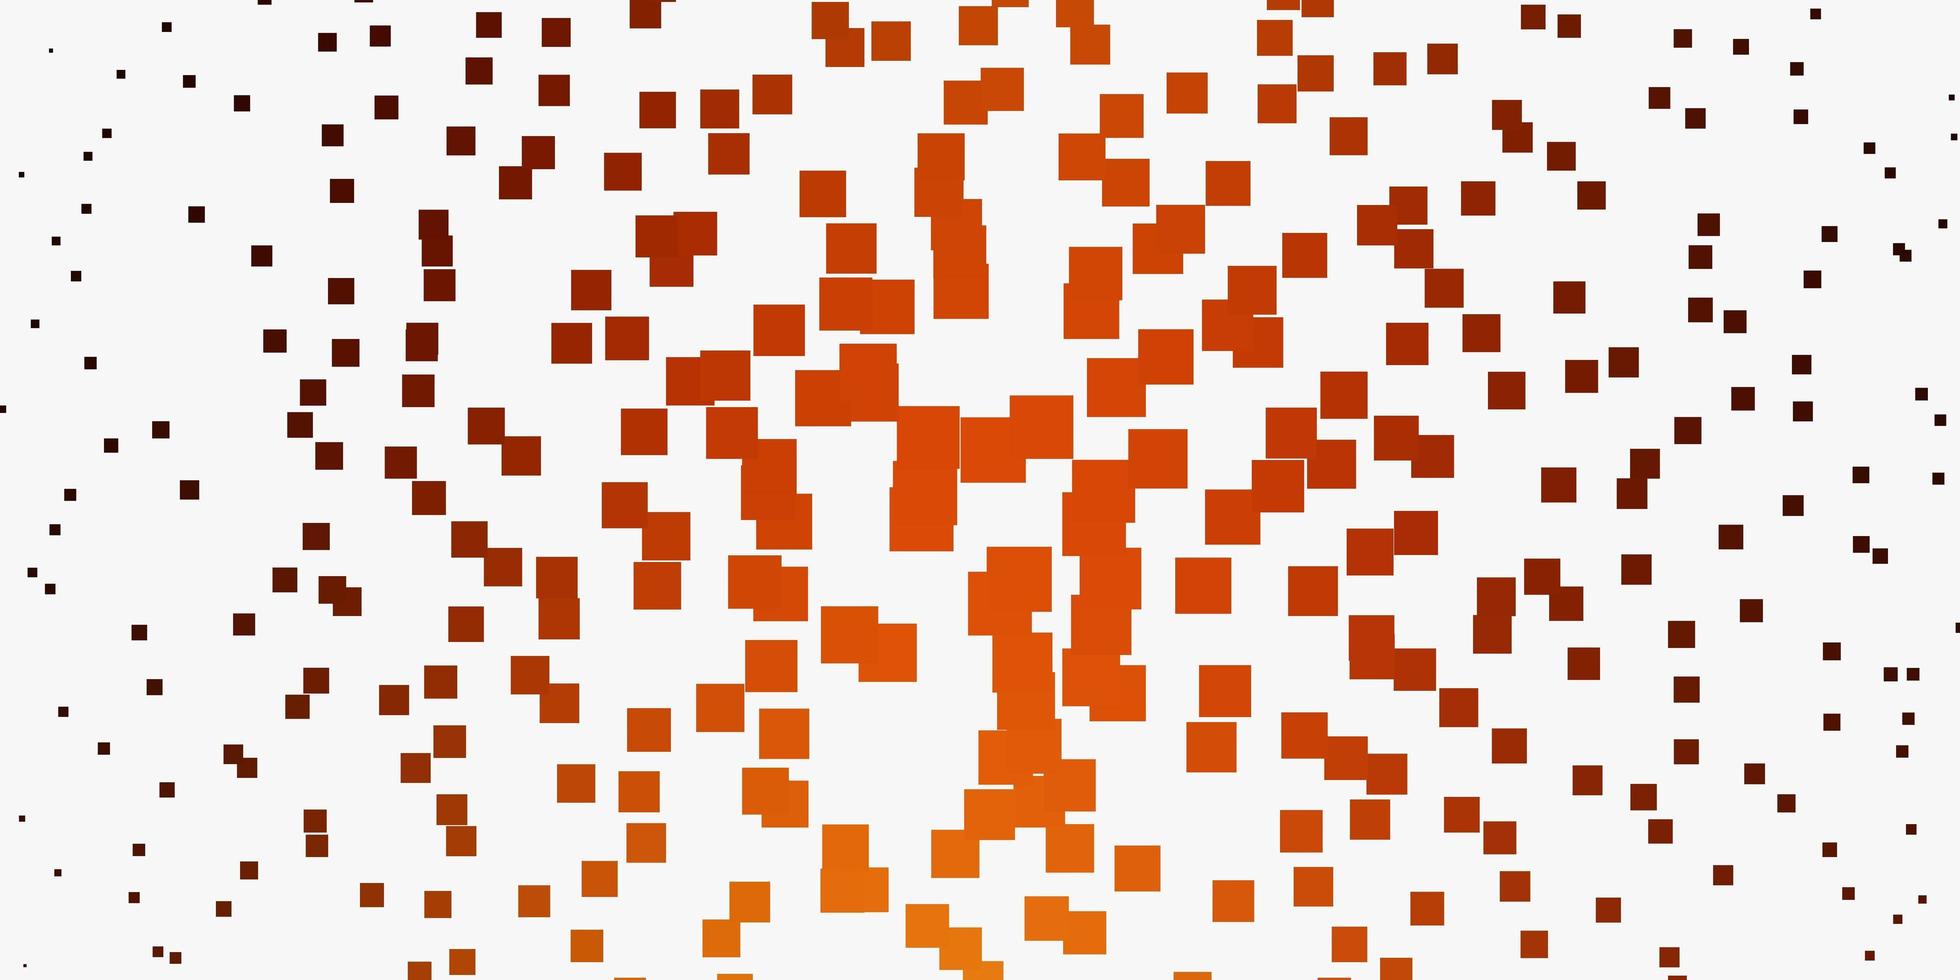 modèle vectoriel orange clair dans un style carré.